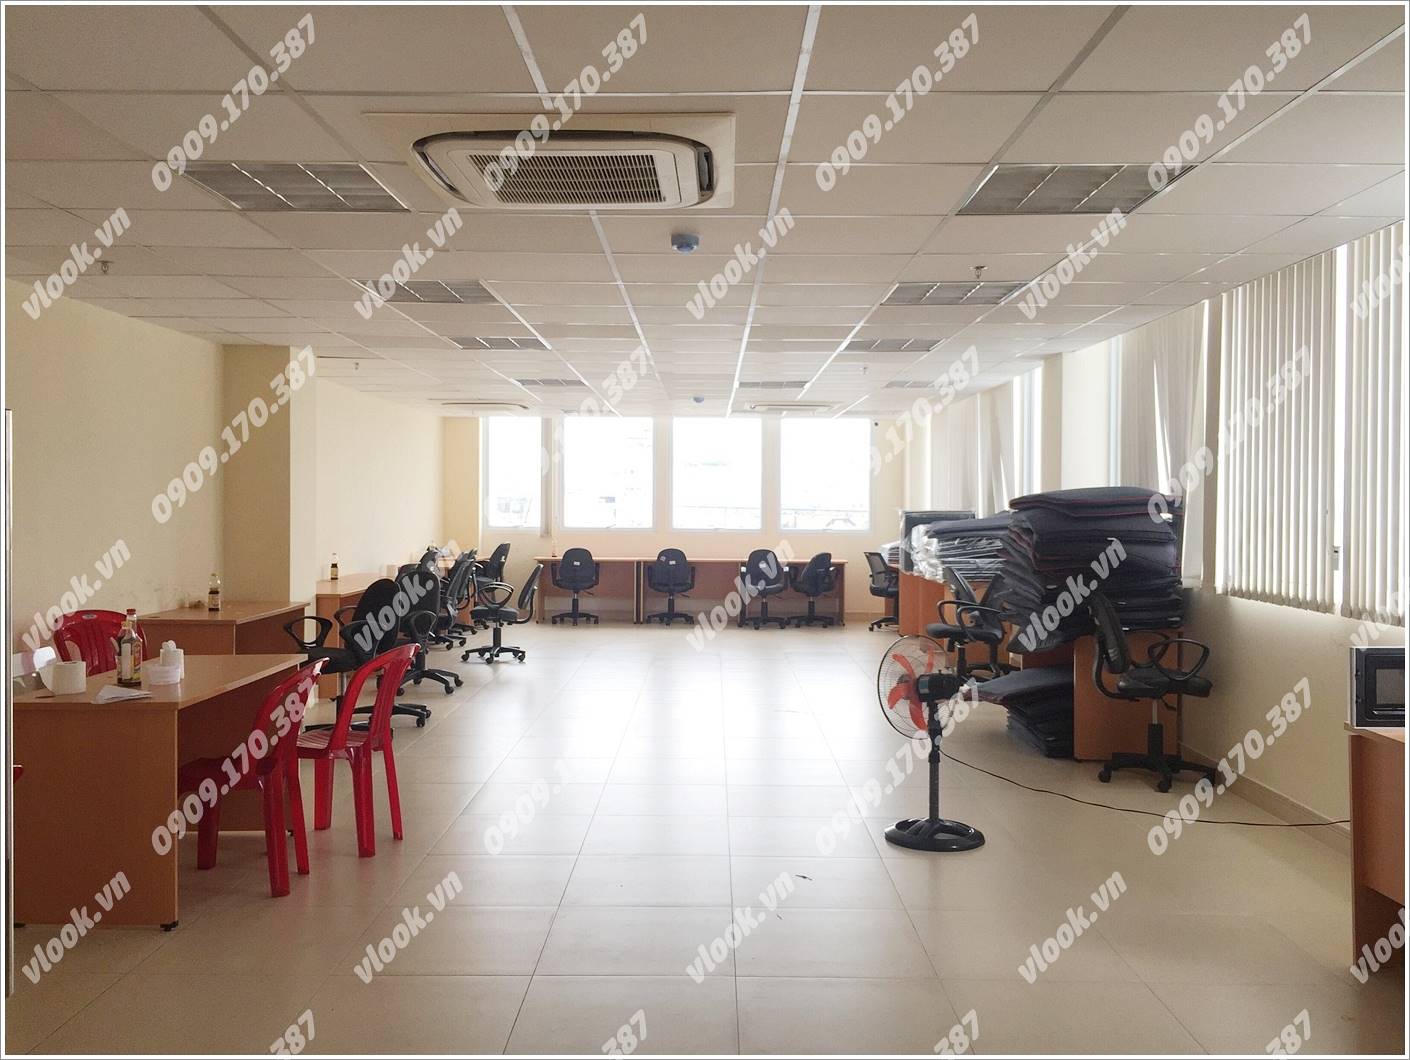 Cao ốc văn phòng cho thuê Phúc An Building, Trường Chinh, Quận Tân Bình, TPHCM - vlook.vn